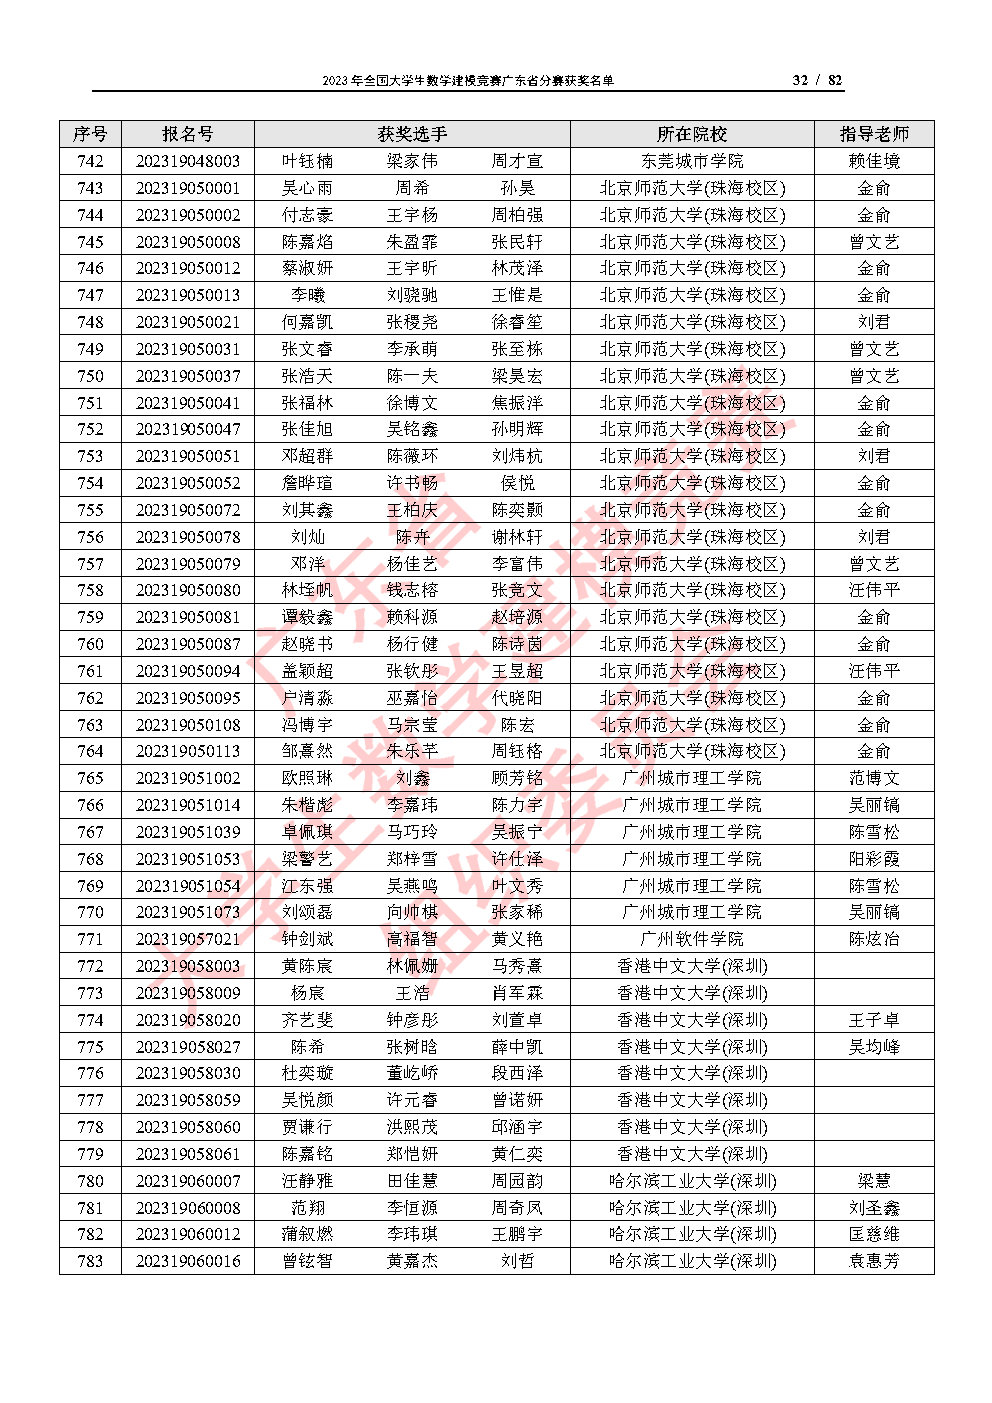 2023年全国大学生数学建模竞赛广东省分赛获奖名单_Page32.jpg